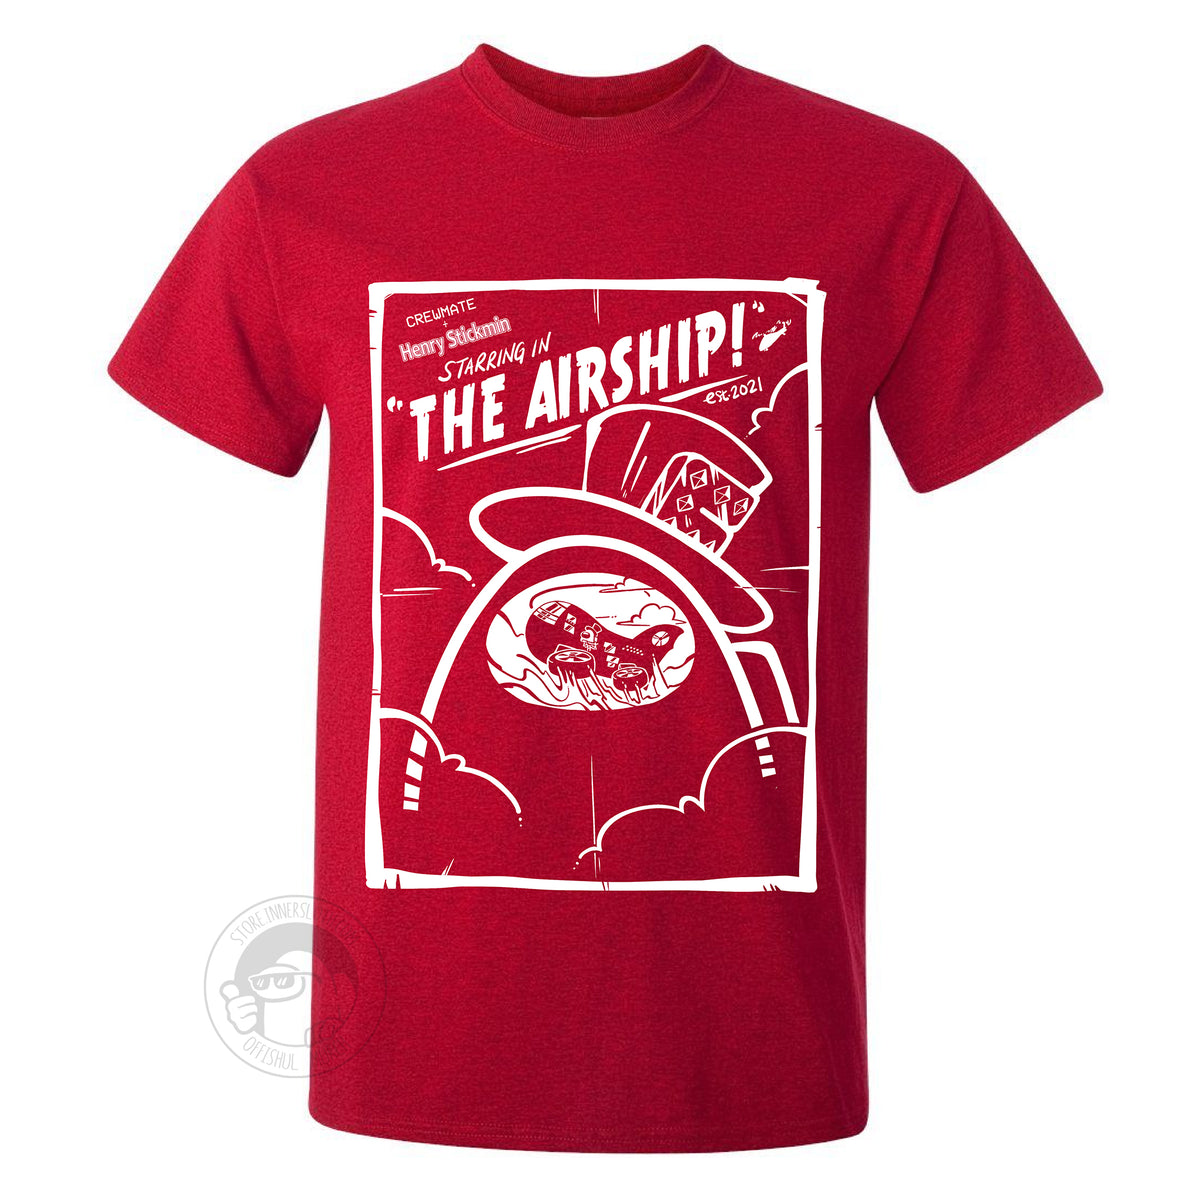 Among Us: The Airship T-shirt